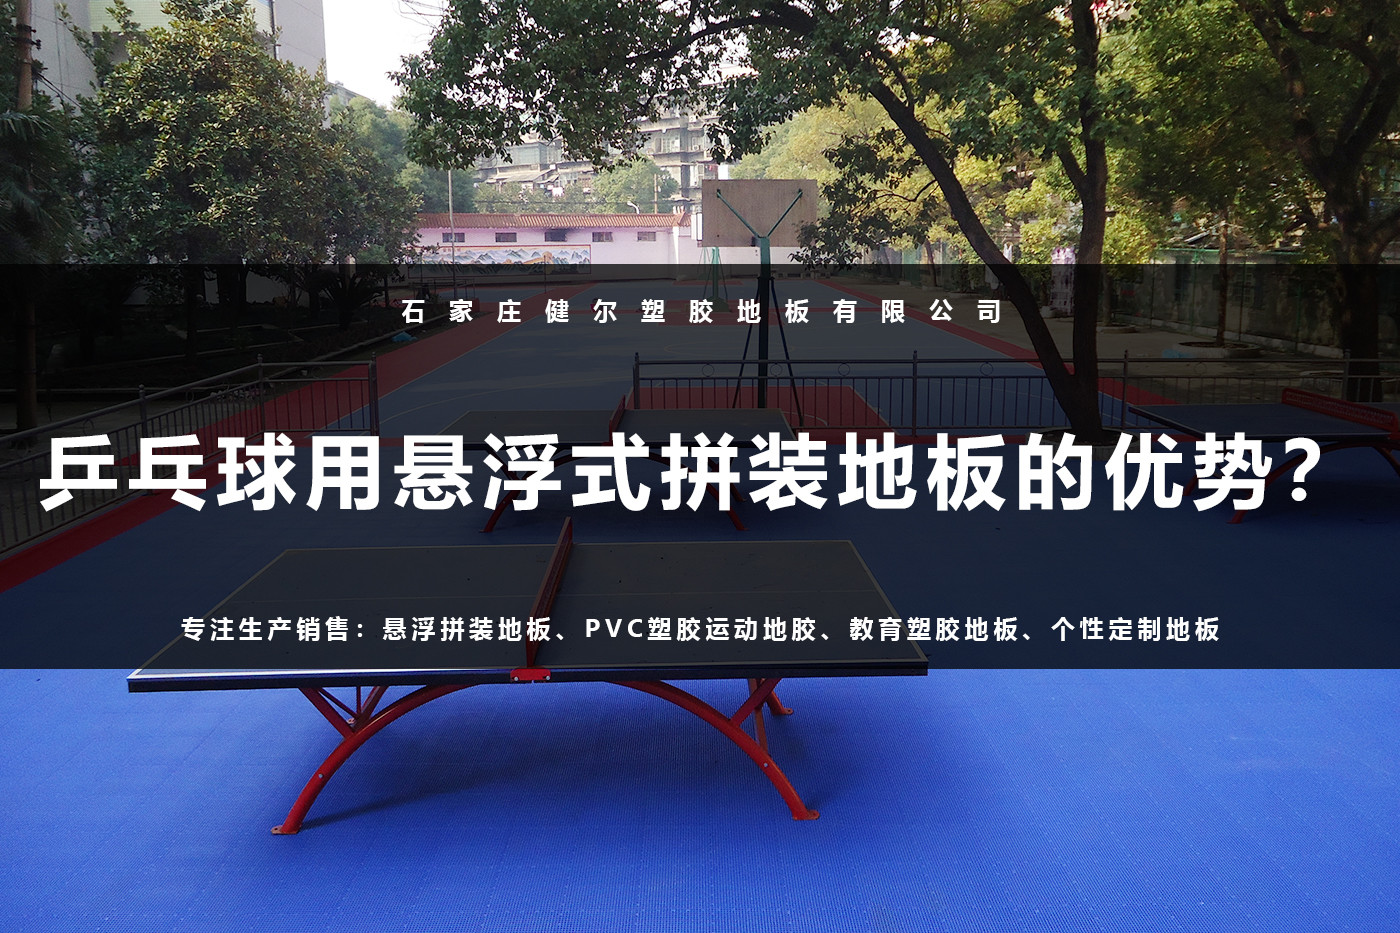 乒乓球用悬浮式拼装地板的优势.jpg